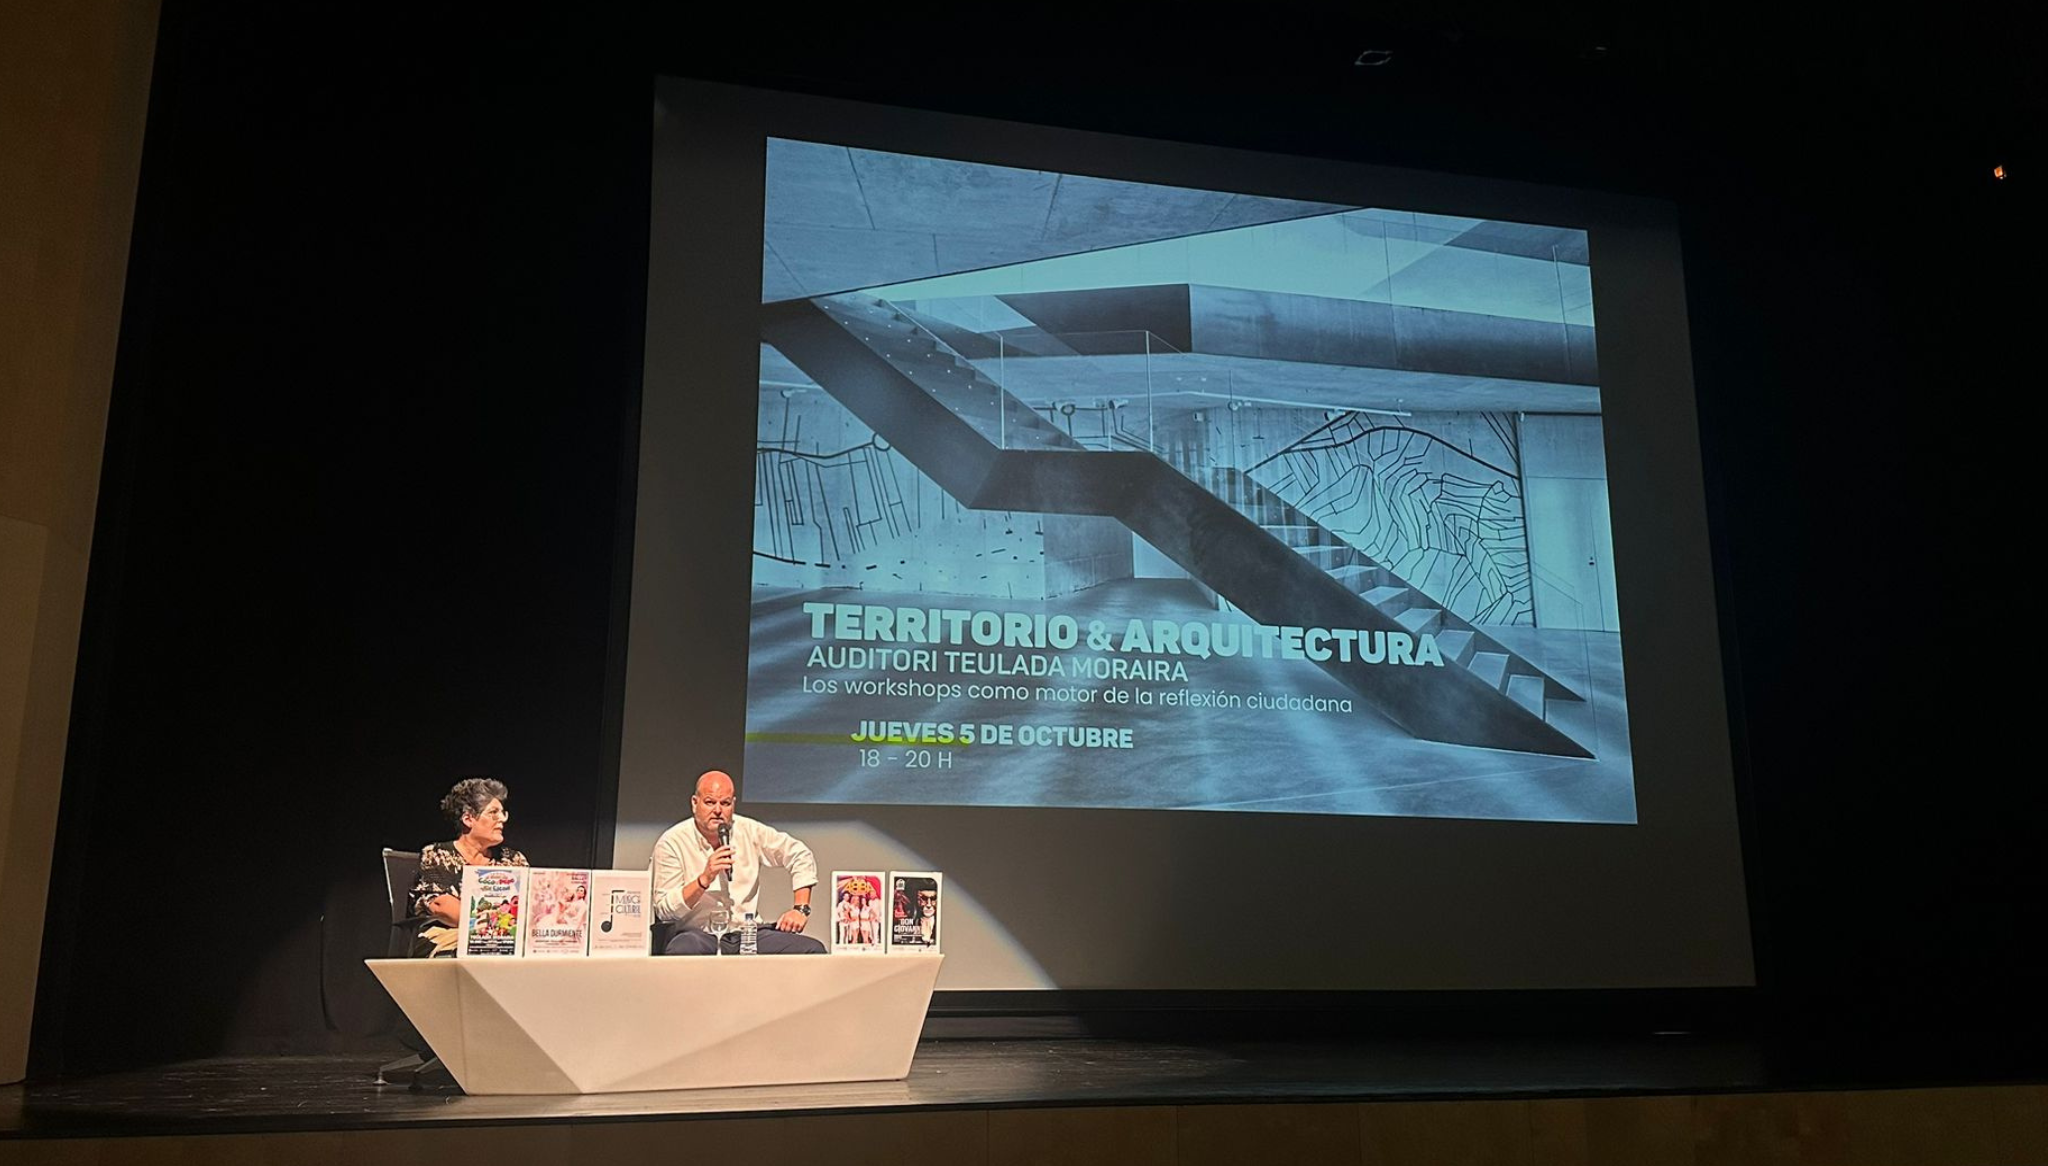 Territorio y arquitectura en Auditori Teulada Moraira